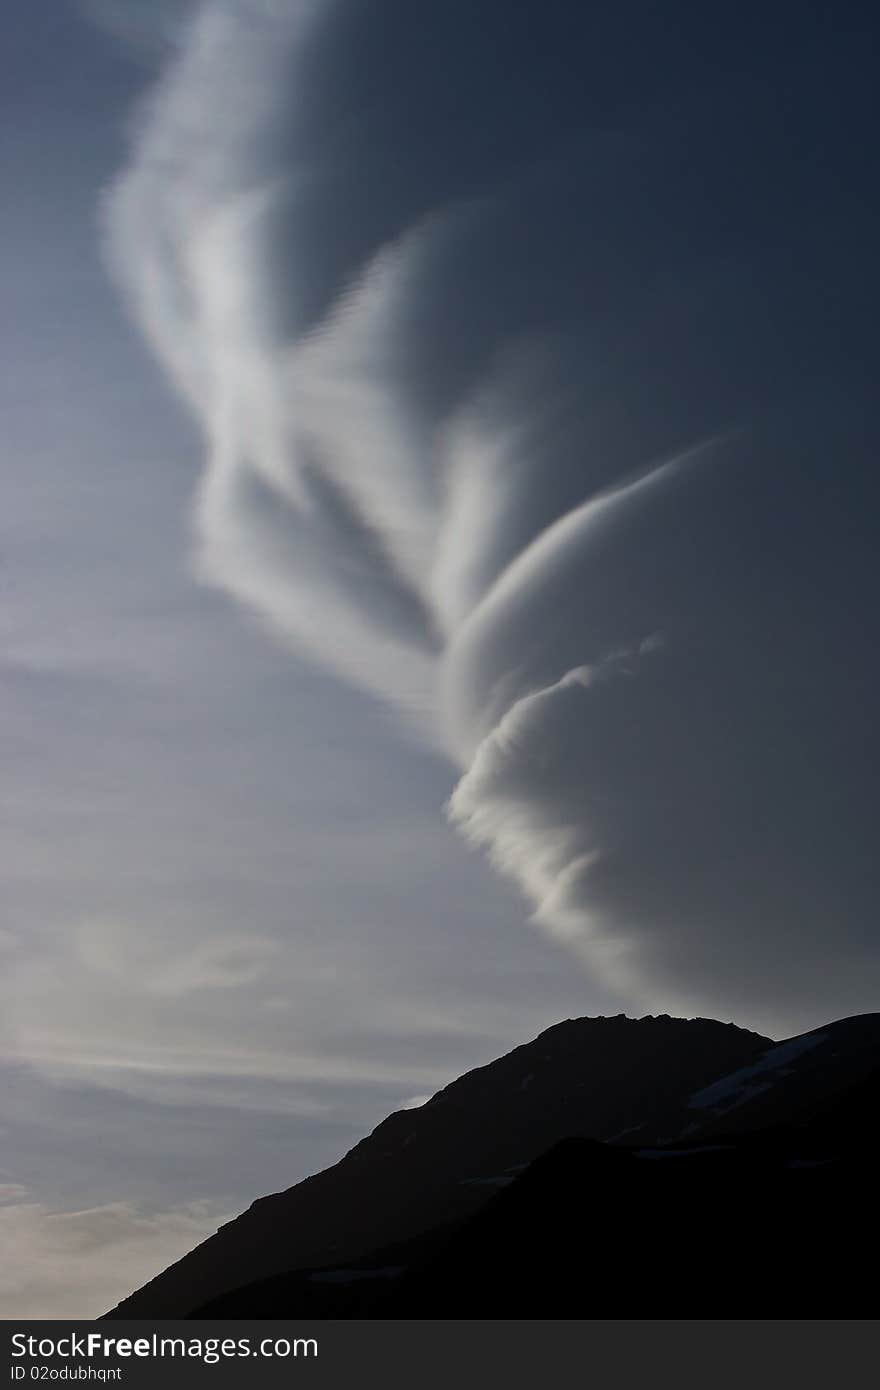 Natural phenomenon in Caucasus Mountains, Elbrus, Adilsu june 2010